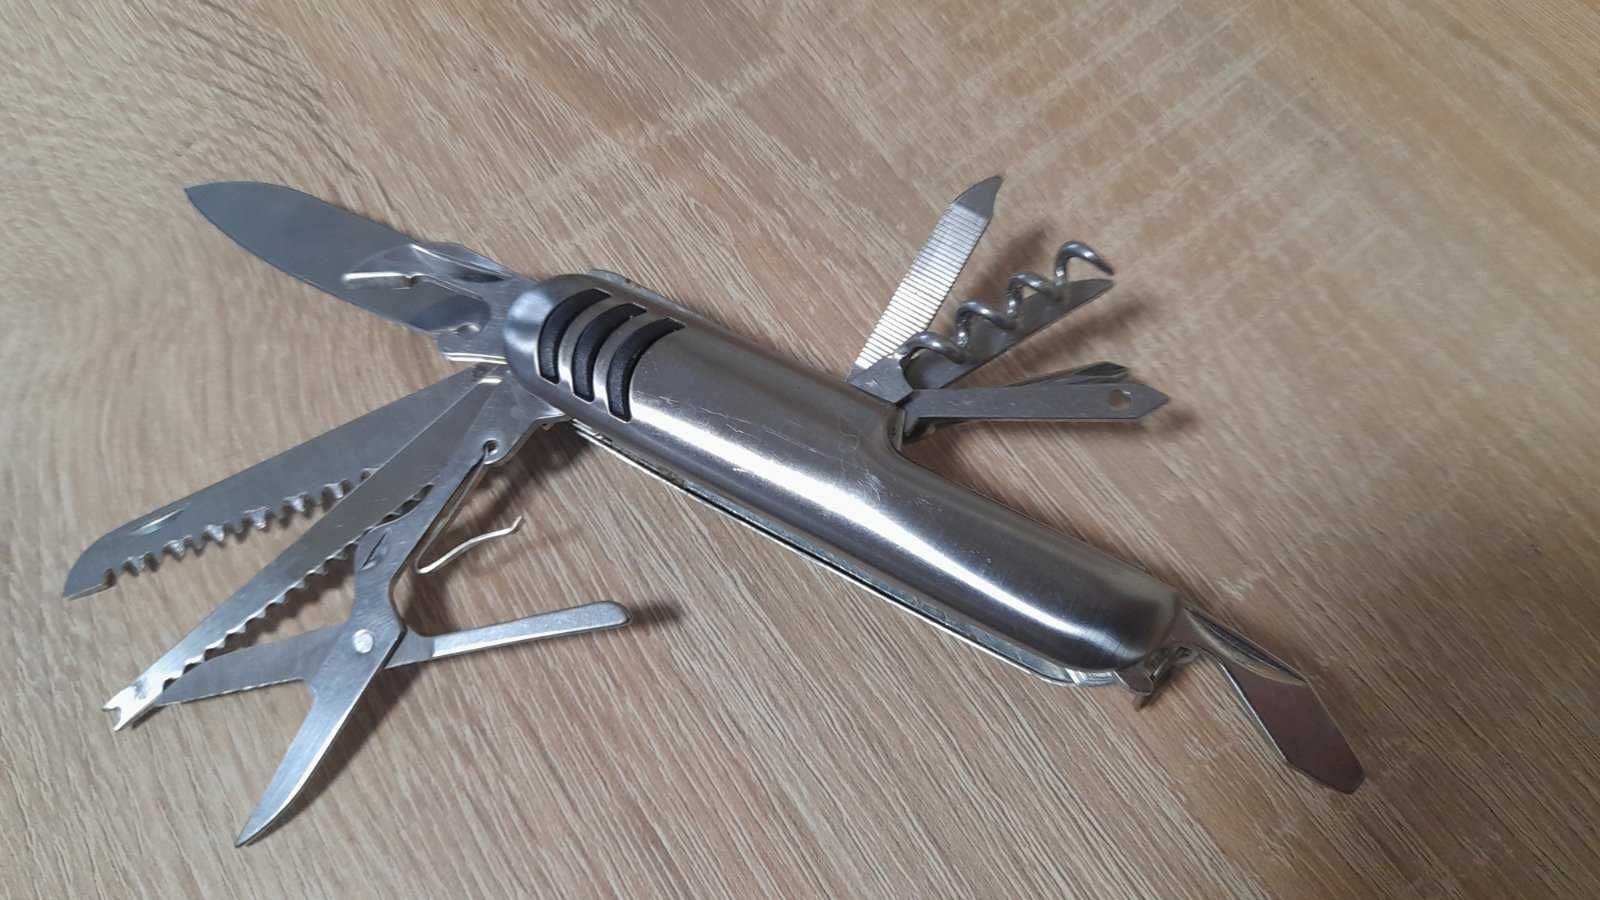 Перочинный многофункциональный нож Stainless Steel, новый, в футляре